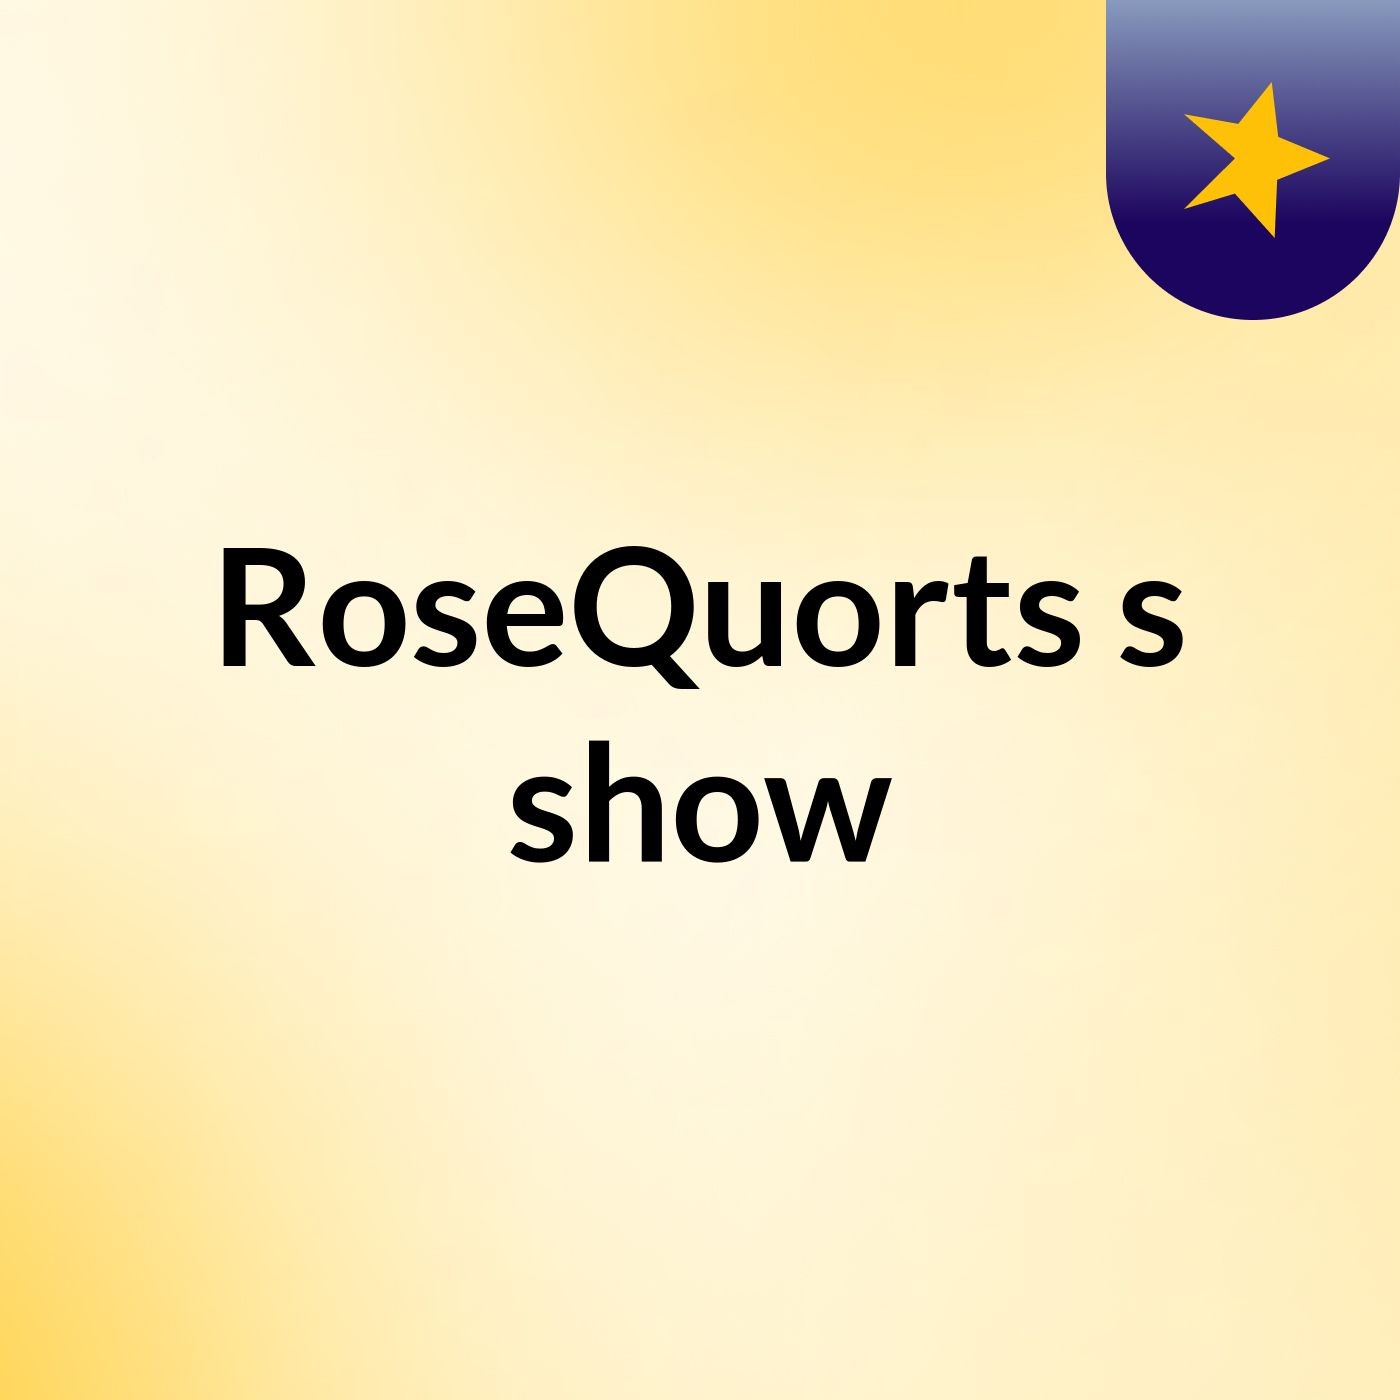 RoseQuorts's show